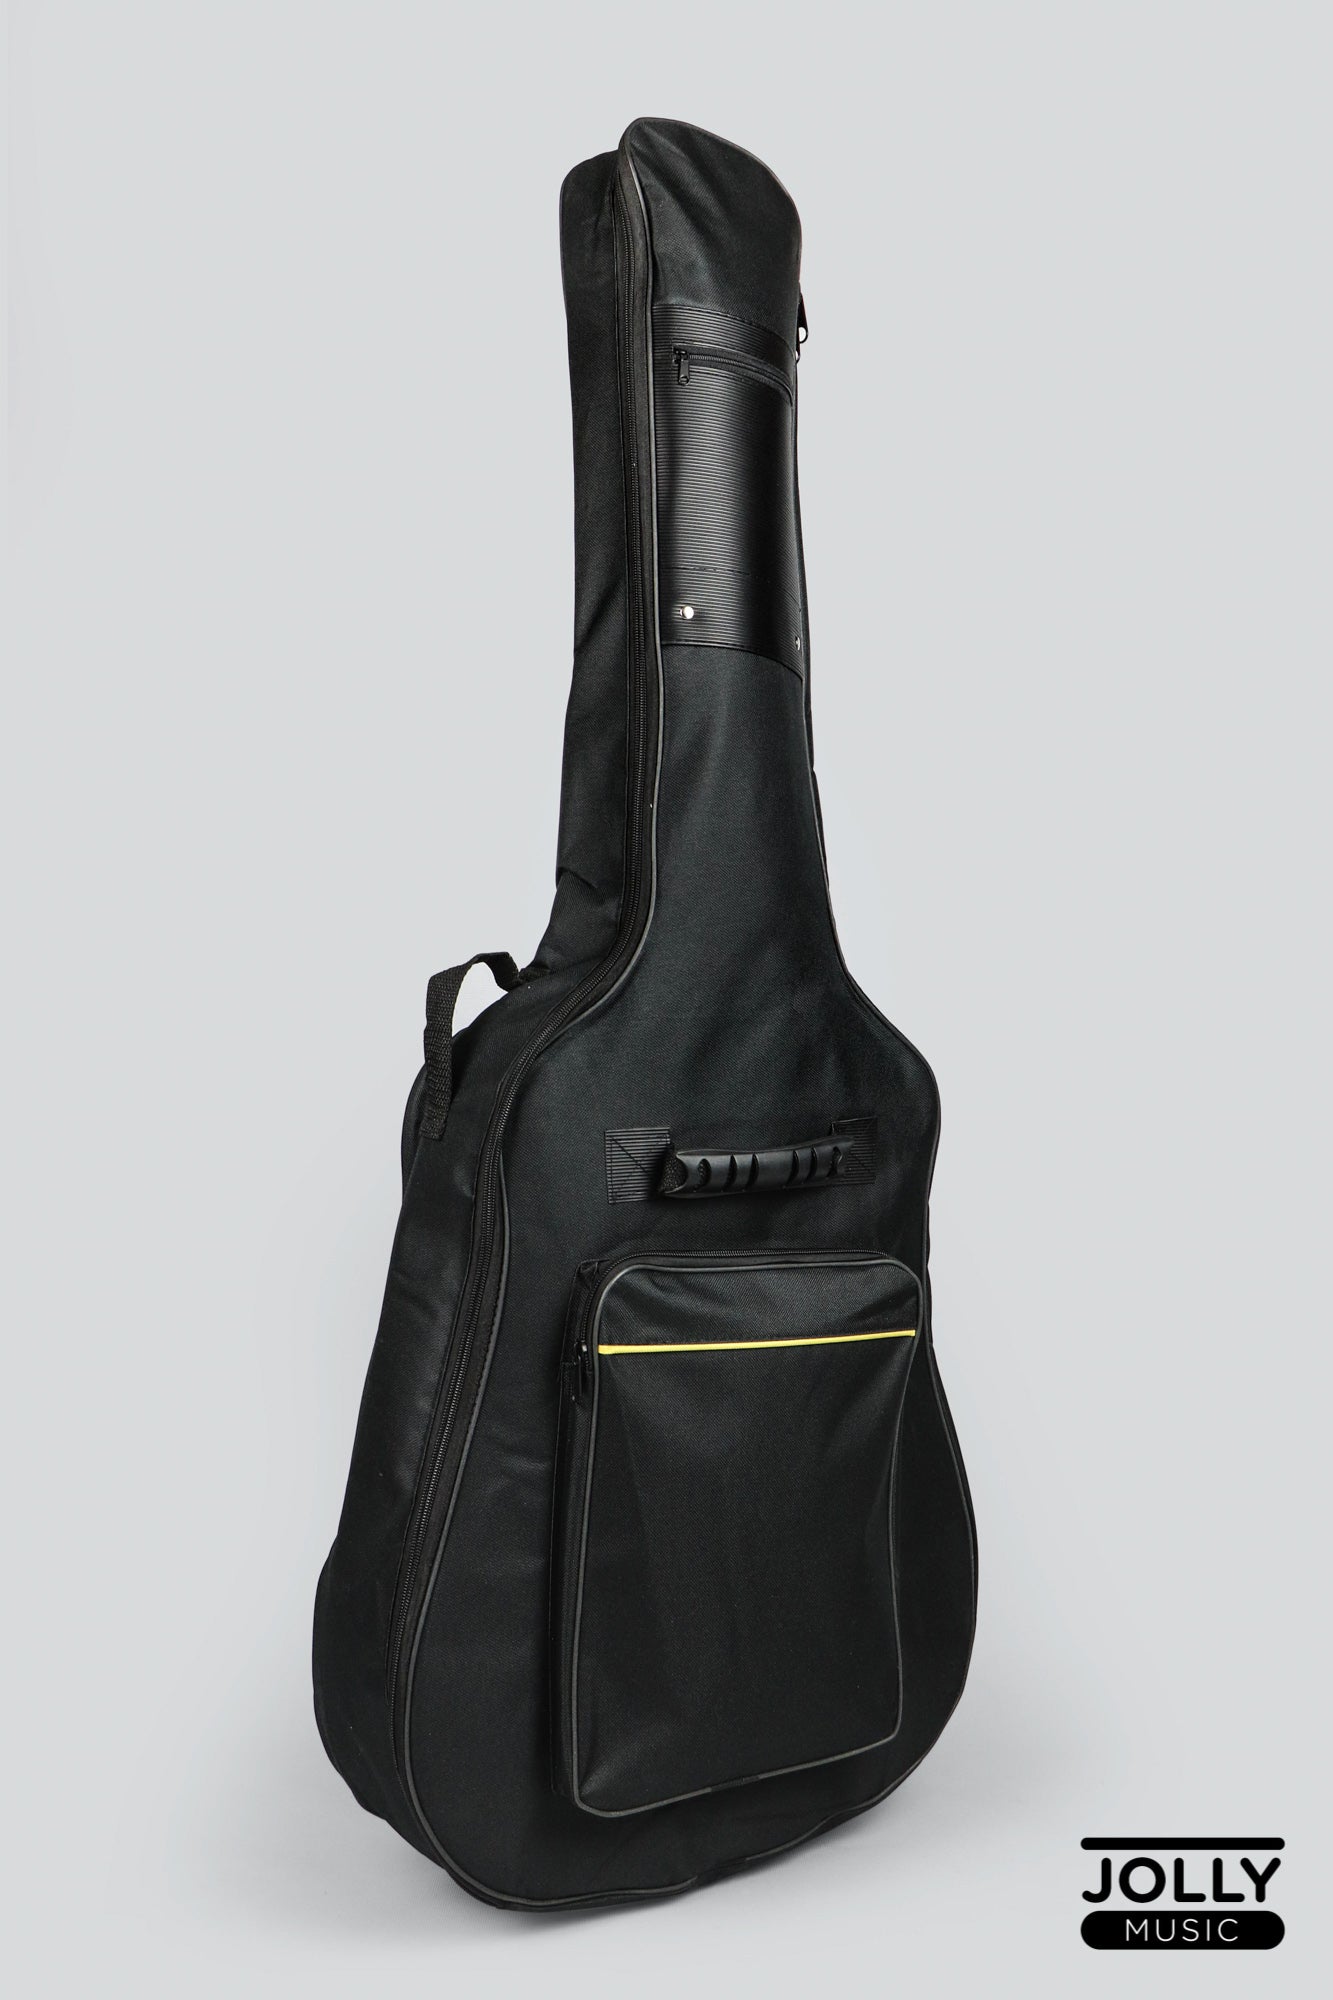 Mexa Acoustic Guitar Bag Foam Padded | Best Guitar Bag Under ₹1000 - YouTube